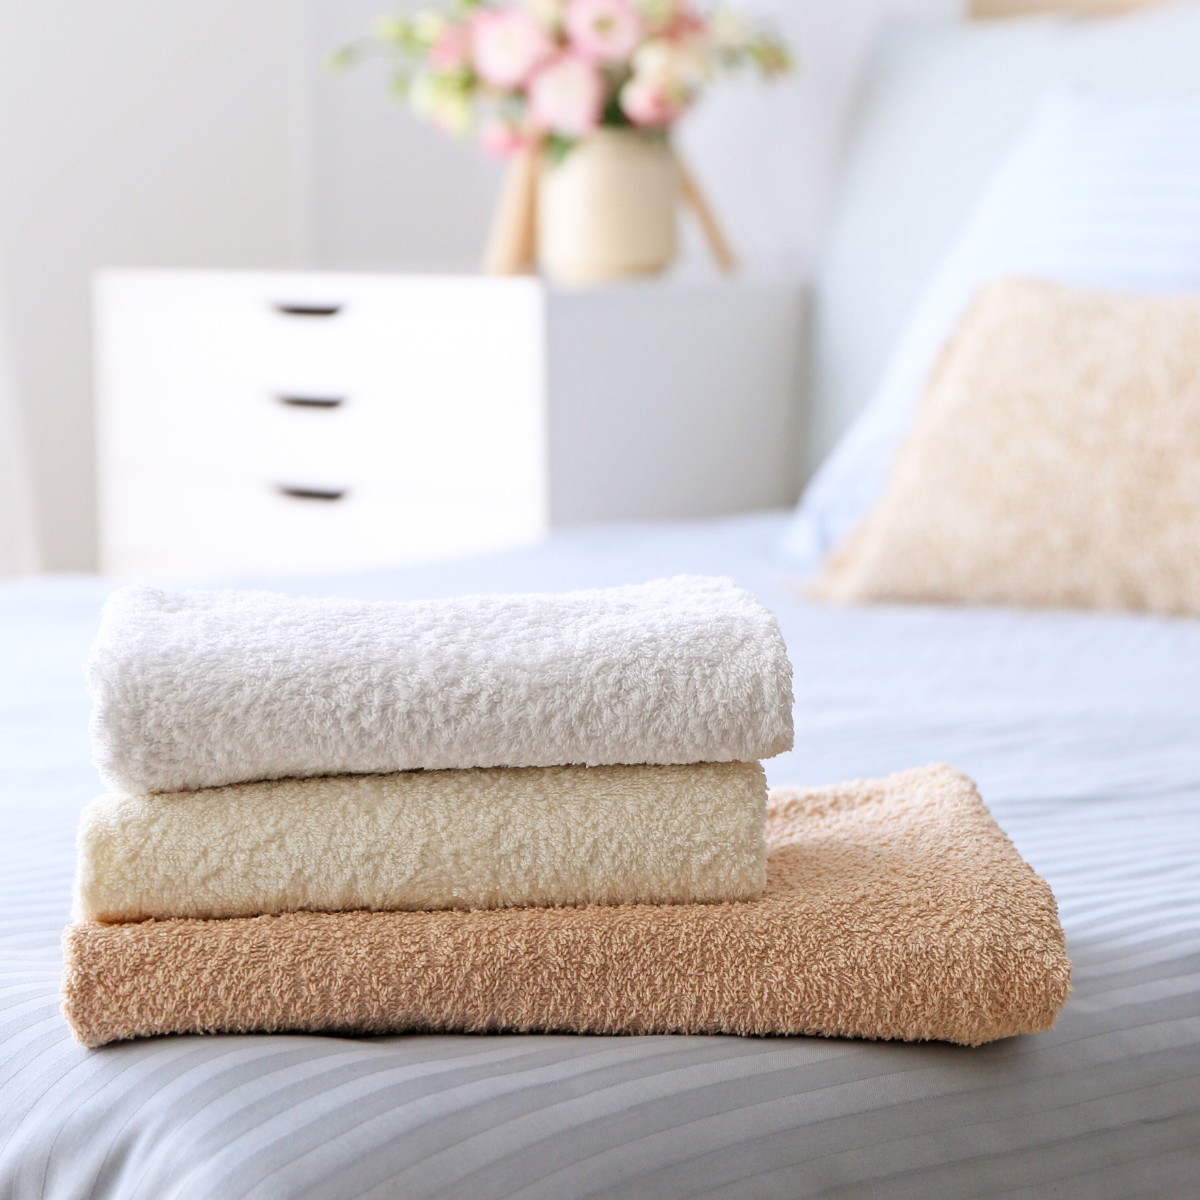 Ręcznik frotte czy welurowy? Porównanie materiałów i właściwości